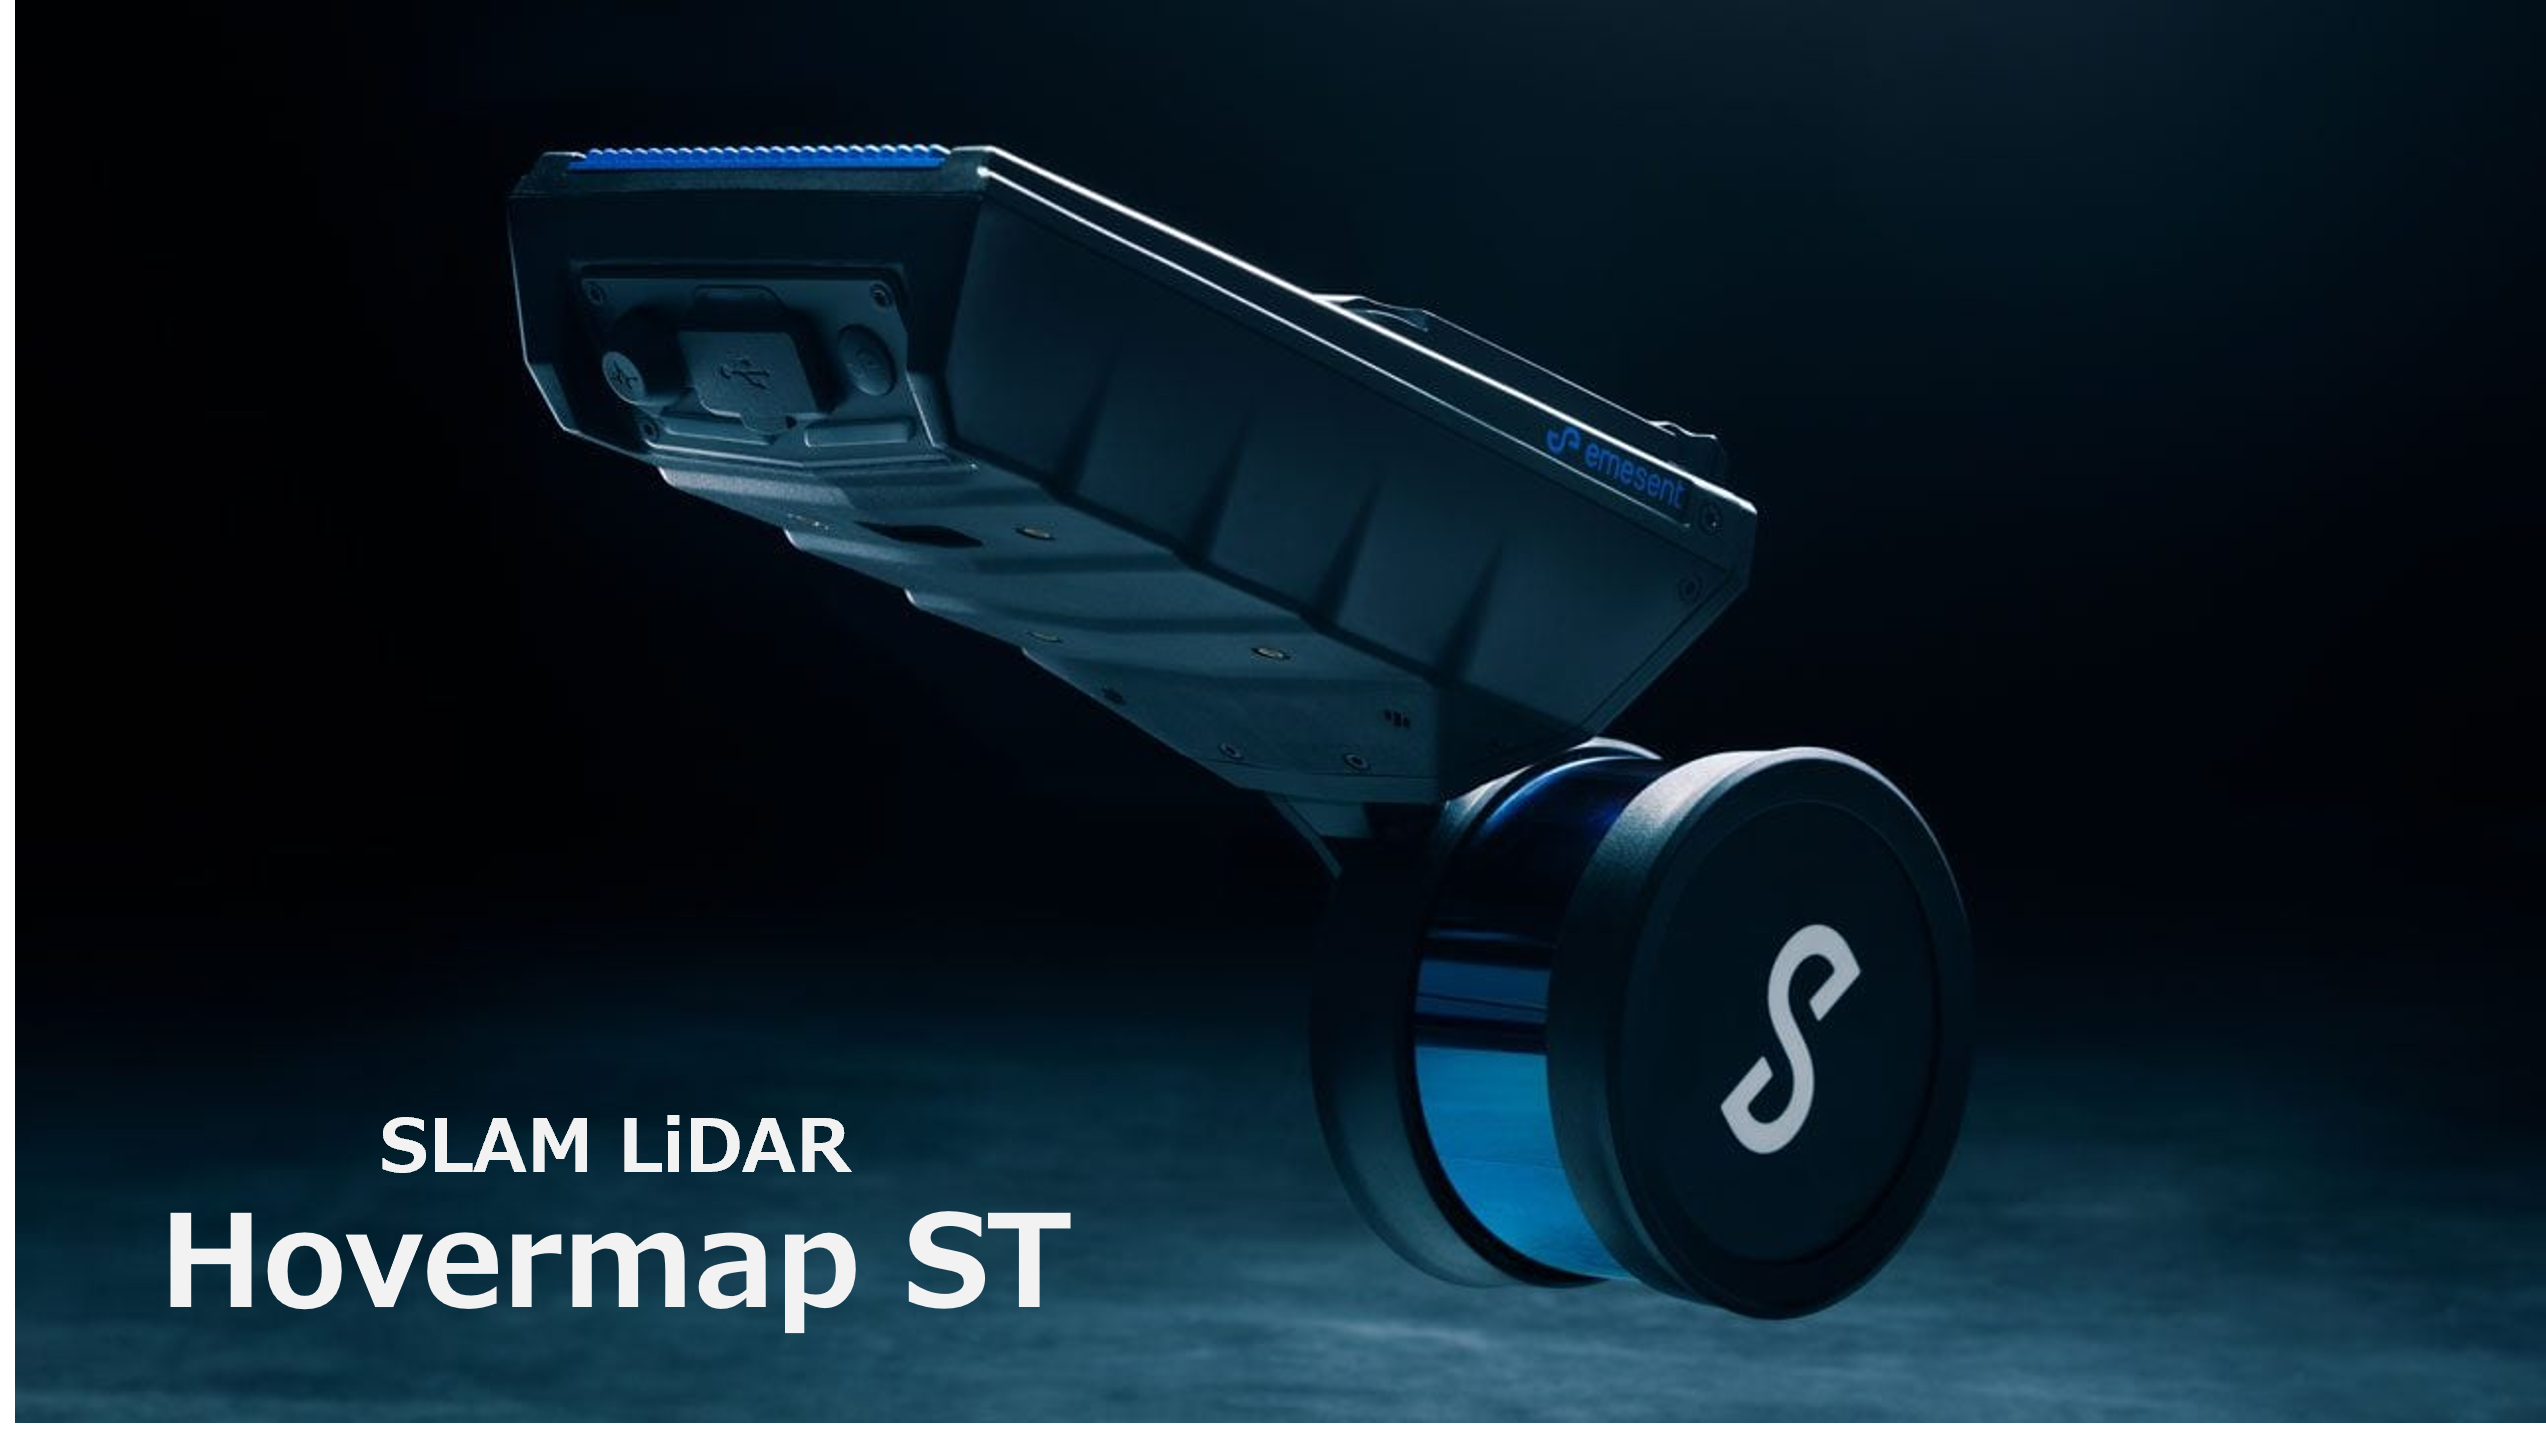 更に進化したSLAM LiDAR「Hovermap ST」